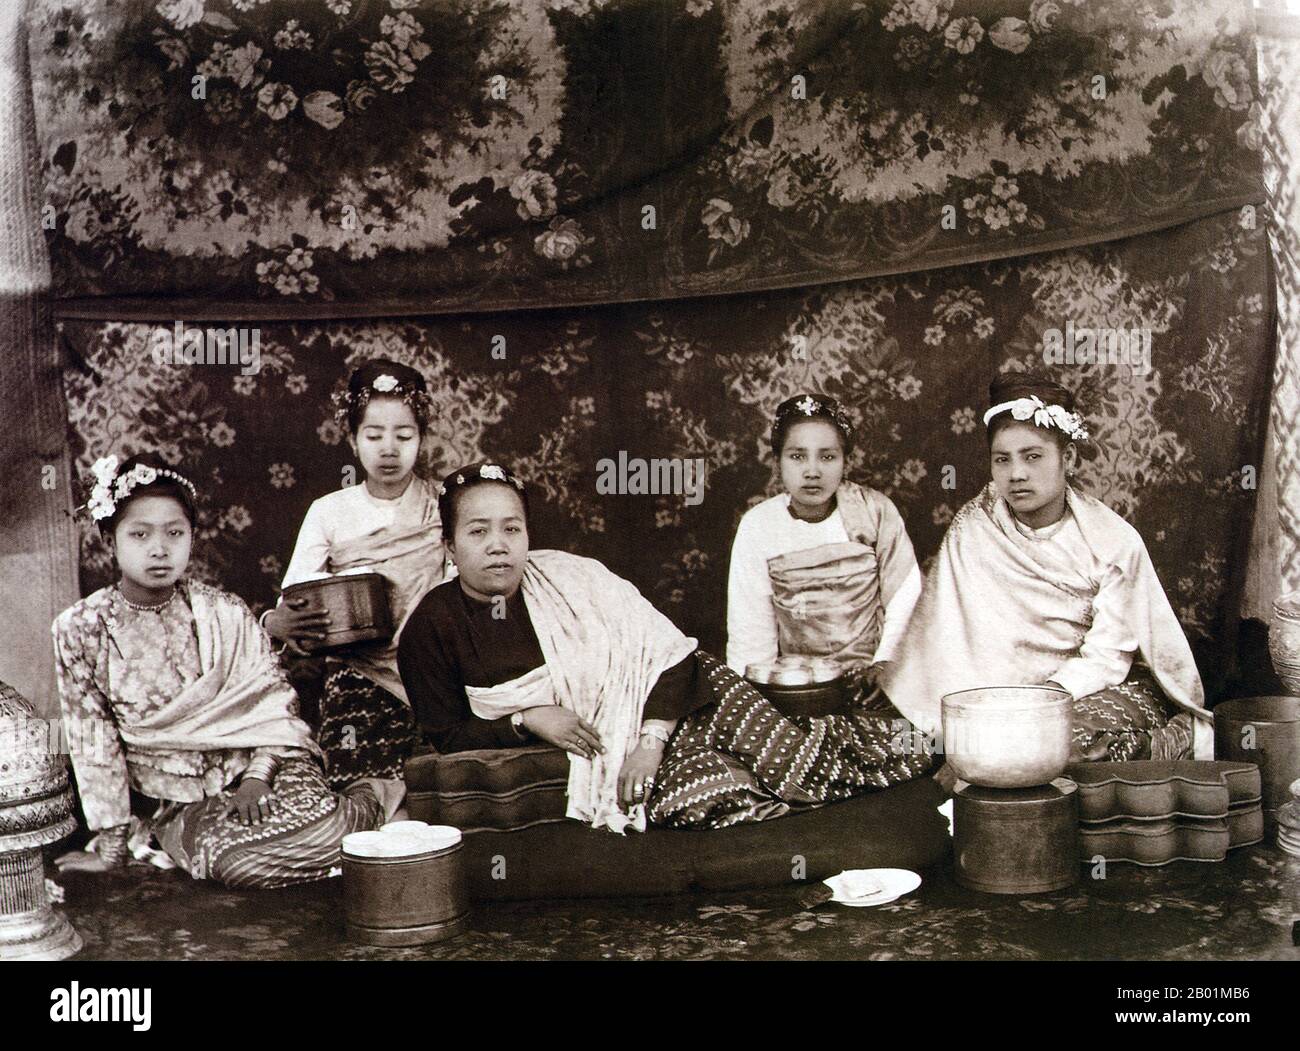 Birmanie/Myanmar : une mère et une fille aisées fréquentées par trois servantes. Photo de Felice Beato (1832 - 29 janvier 1909), c. 1885 Felice Beato, également connu sous le nom de Felix, était un photographe italo-britannique. Il a été l'un des premiers à prendre des photos en Asie de l'est et l'un des premiers photographes de guerre. Il est connu pour ses œuvres de genre, portraits et vues et panoramas de l'architecture et des paysages de l'Asie et de la région méditerranéenne. Les voyages de Beato lui ont donné l'occasion de créer des images de pays, de personnes et d'événements inconnus et éloignés pour la plupart des gens. Banque D'Images